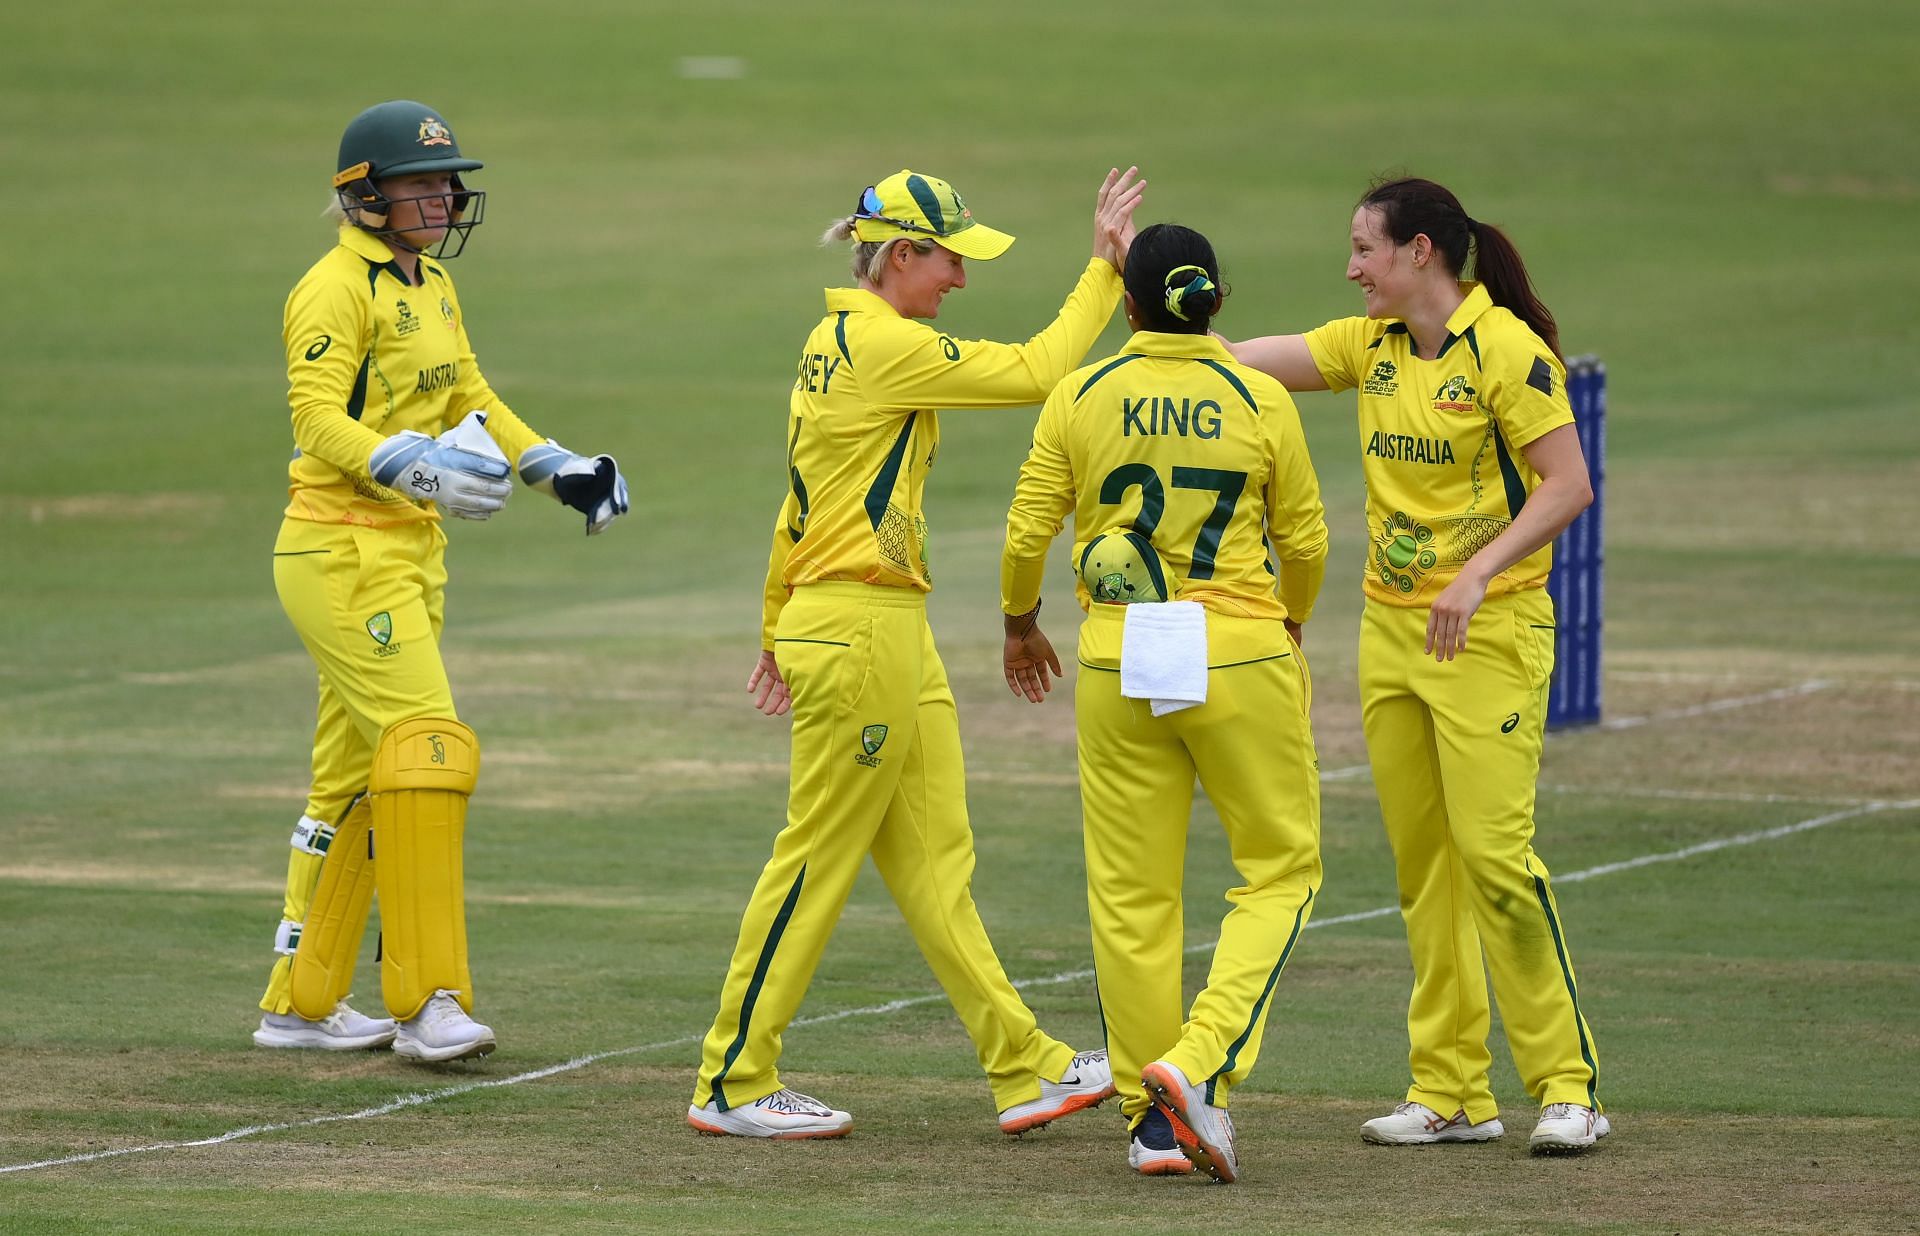 Sri Lanka v Australia - ICC Women